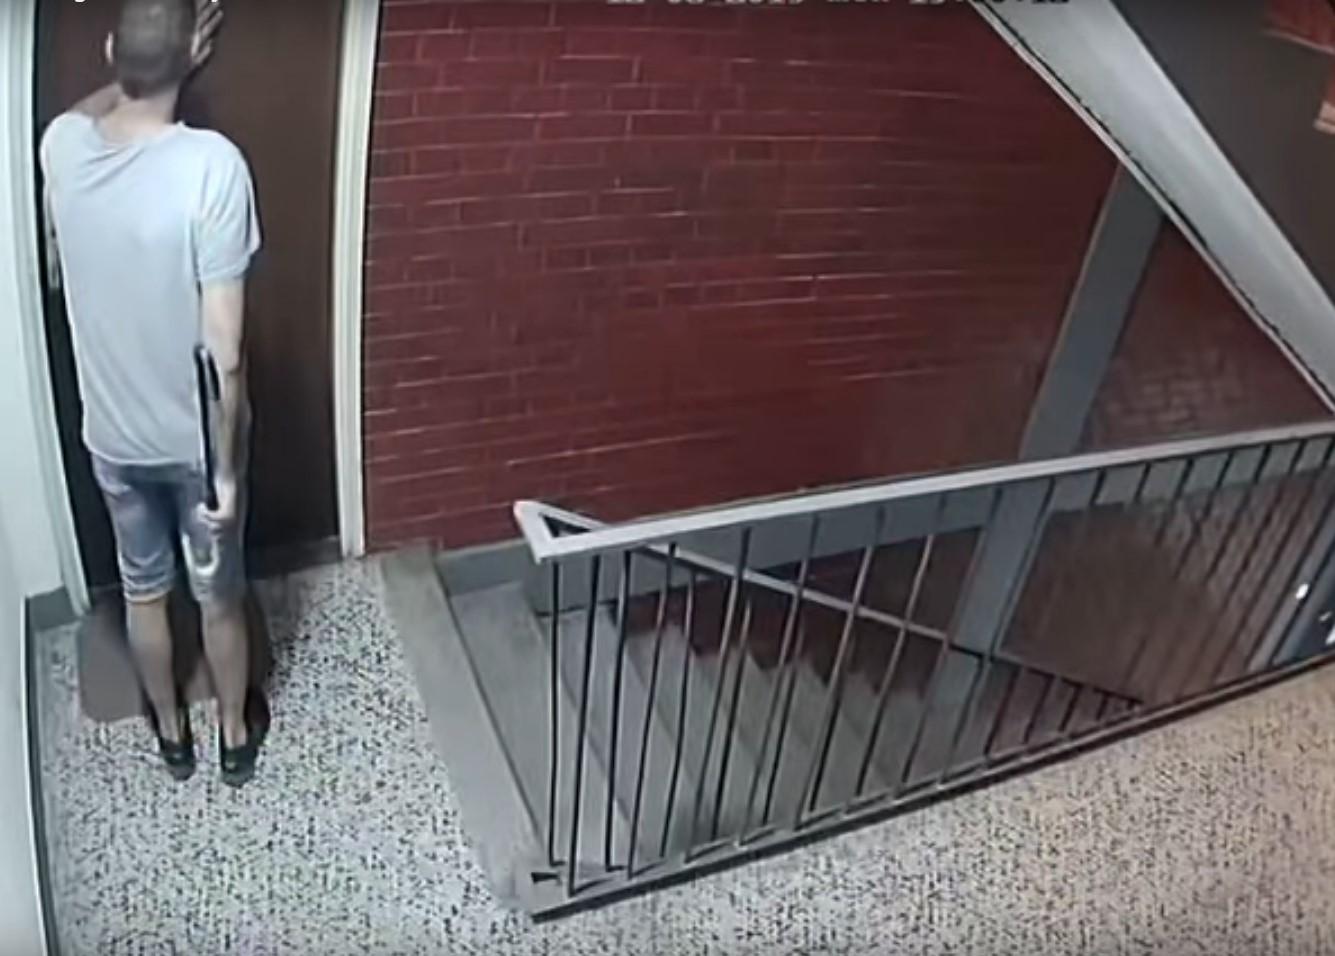 Snimljen lopov s pajserom koji ide od stana do stana: Kad je shvatio da je uhvaćen na djelu, razbio kameru